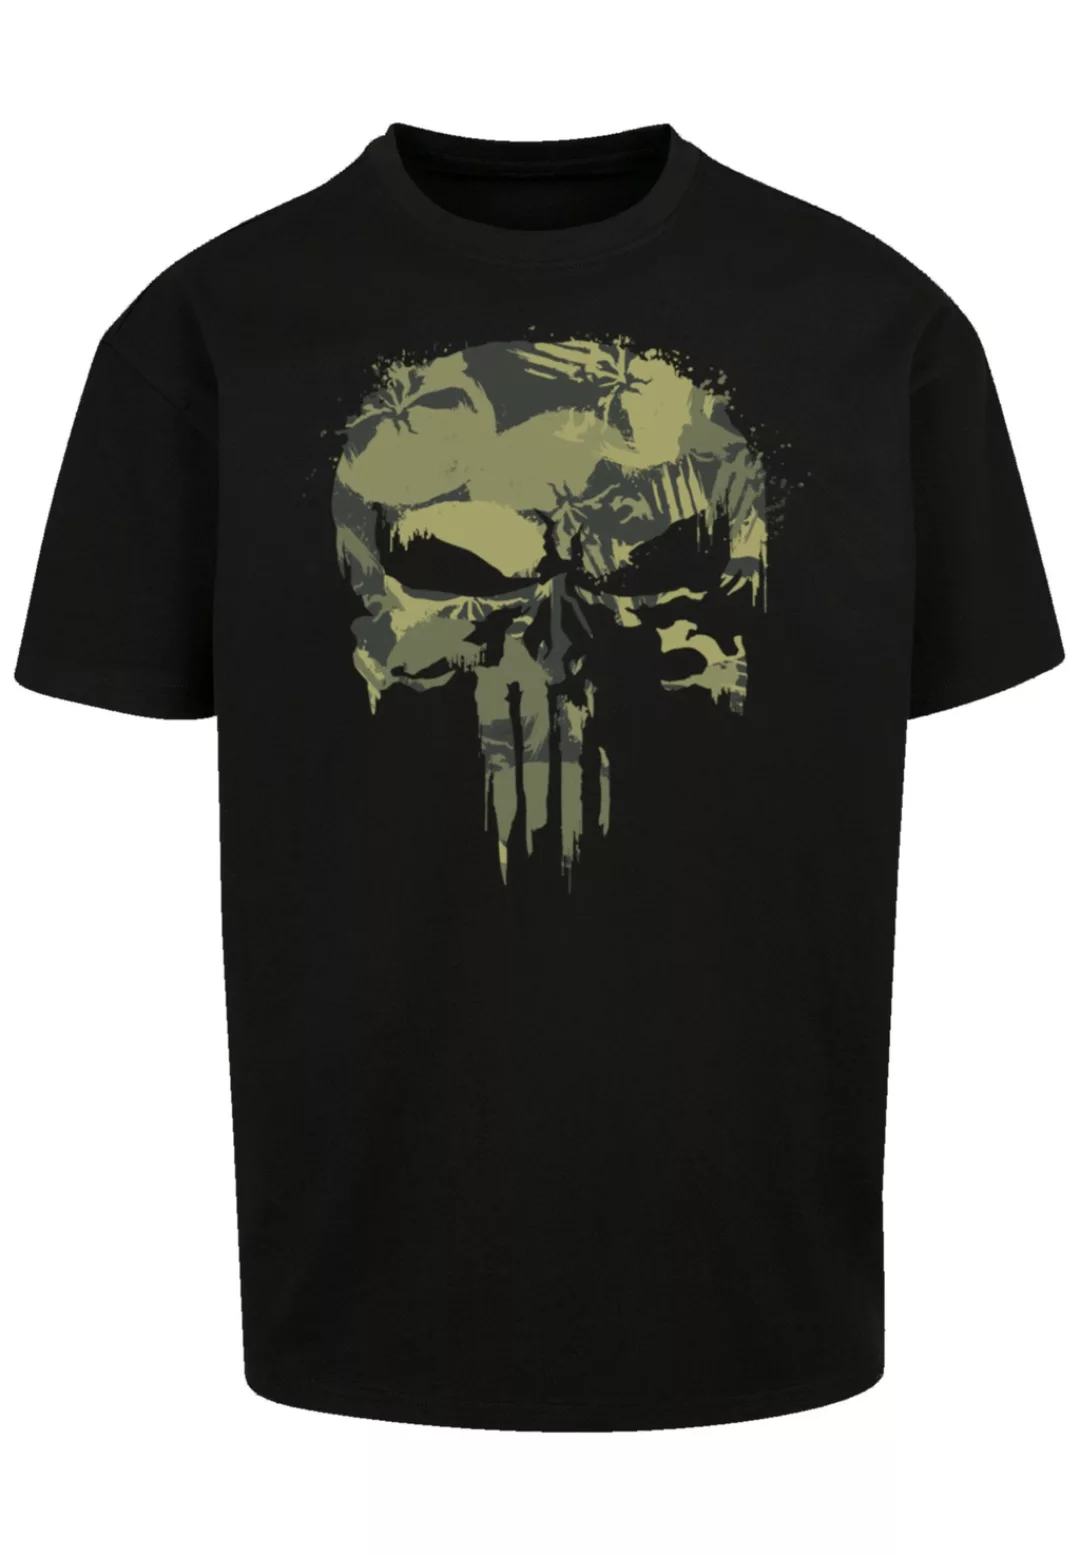 F4NT4STIC T-Shirt "Marvel Punisher" günstig online kaufen